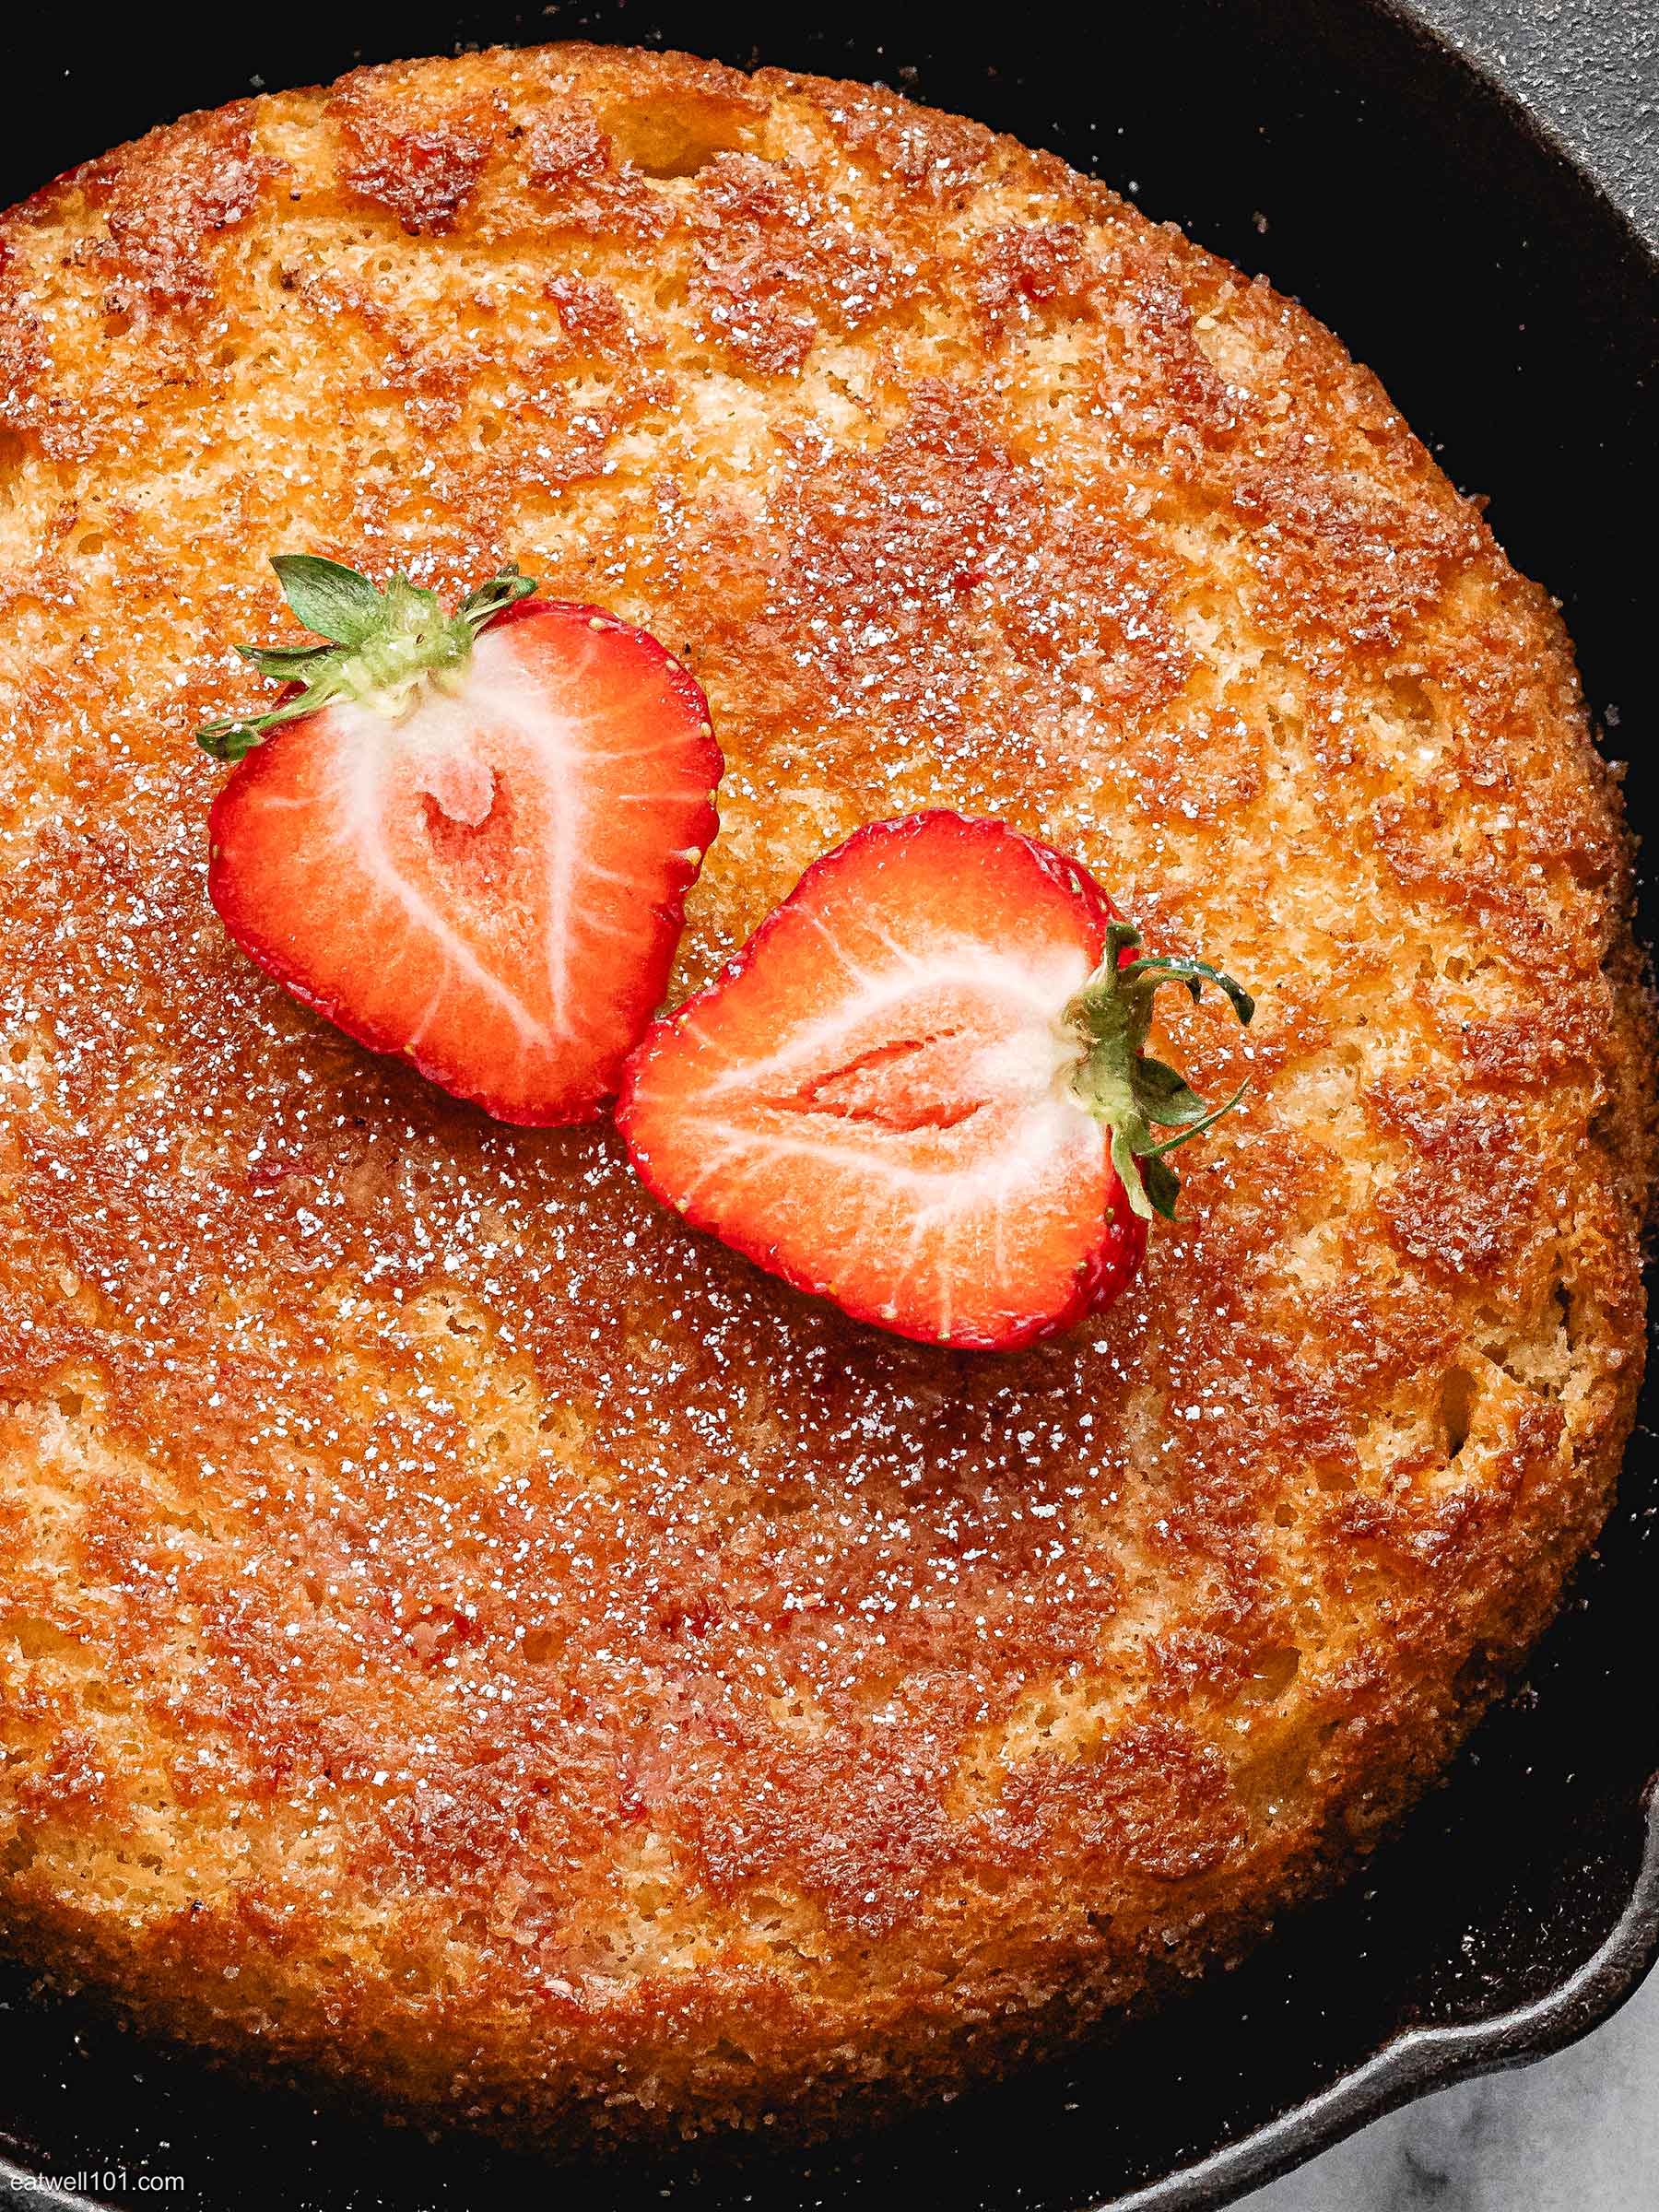 baked pancake recipe